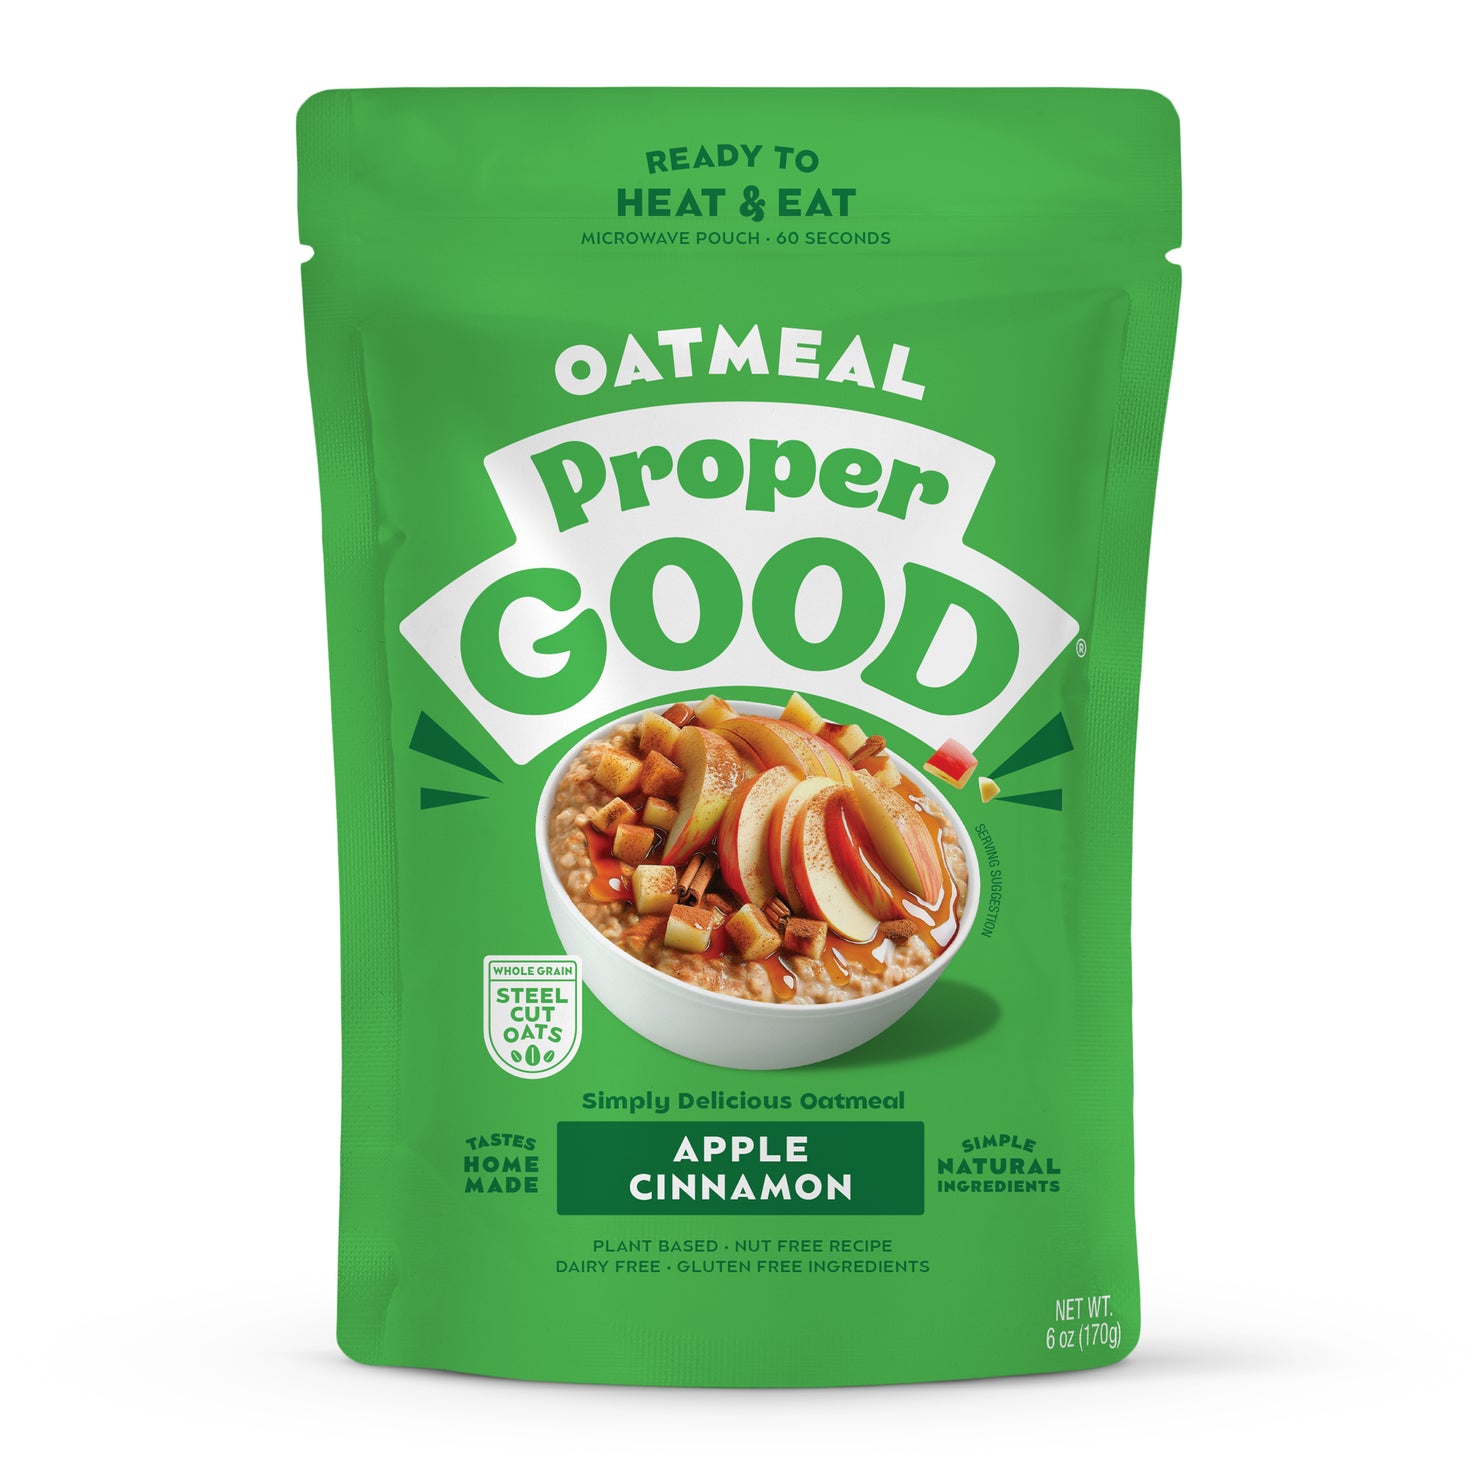 Apple Cinnamon Oatmeal - Eat Proper Good